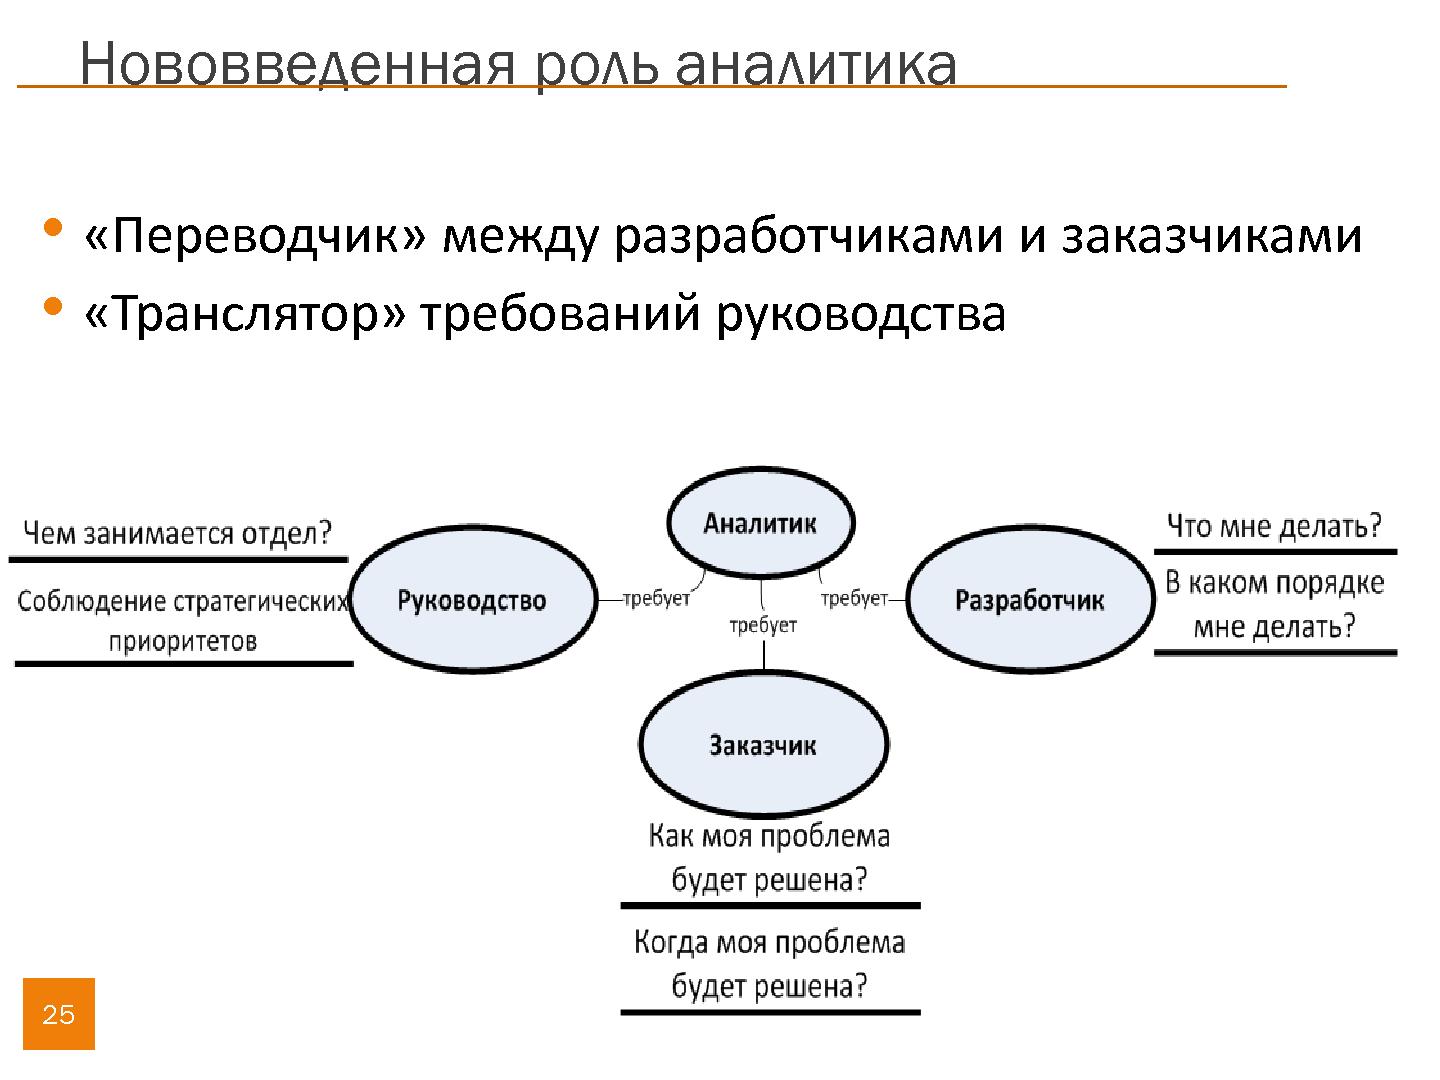 Файл:Опыт построения процессов ИТ-отдела в крупном купонном сервисе (Игорь Архипов, SECR-2013).pdf